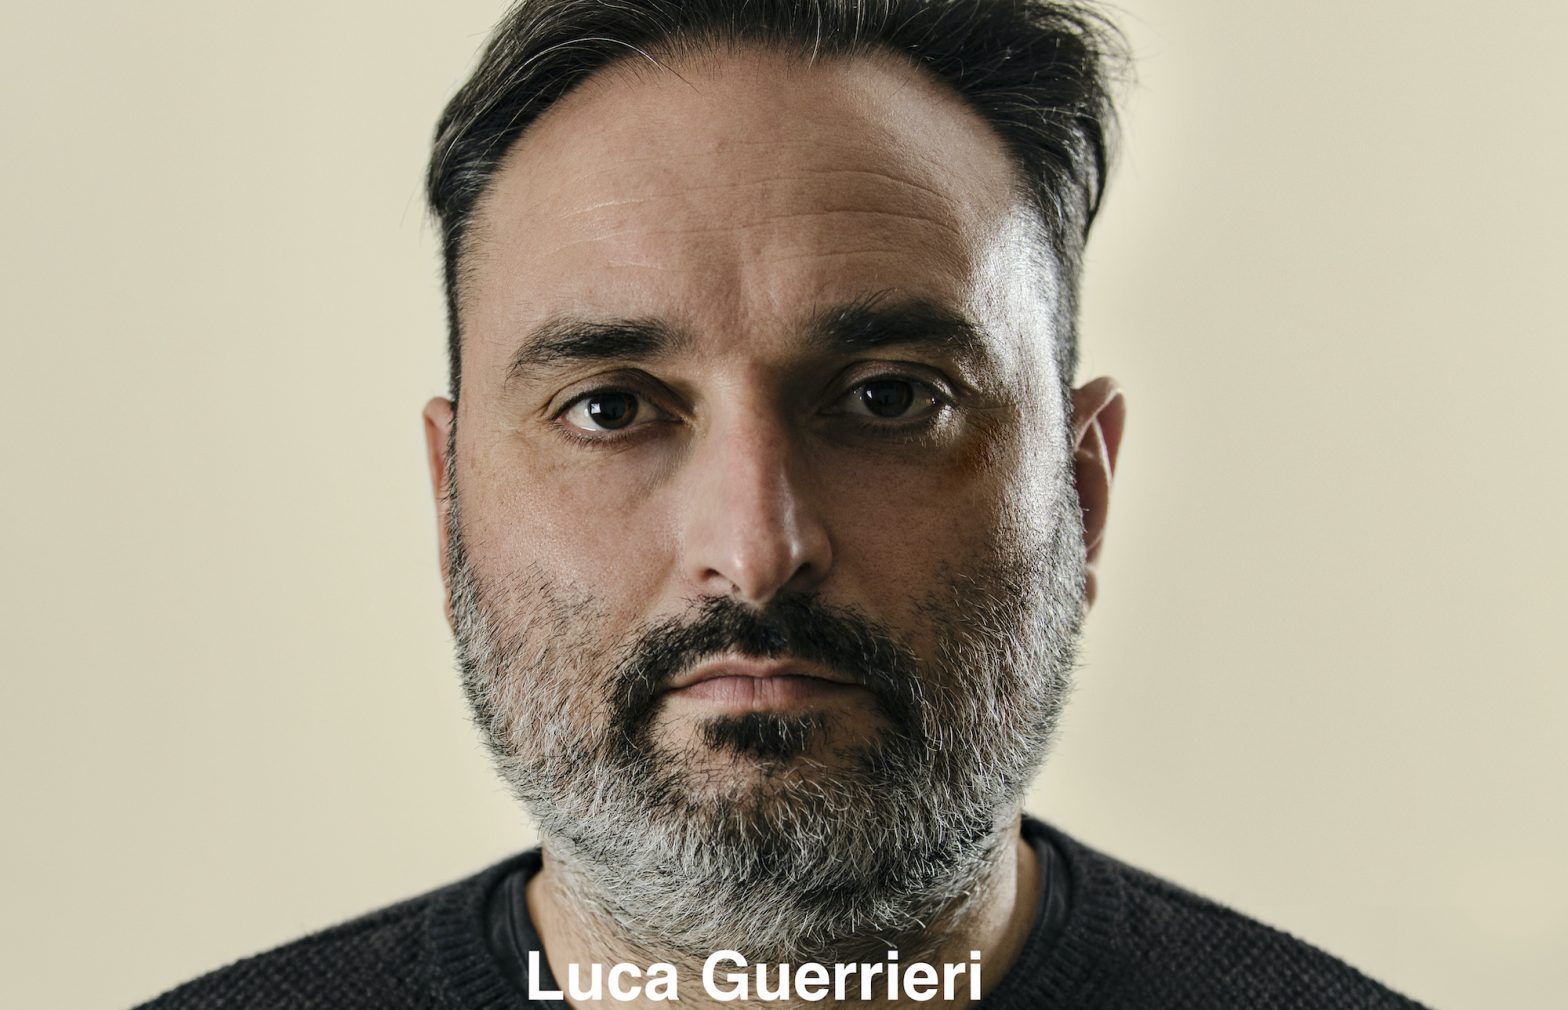 Luca Guerrieri